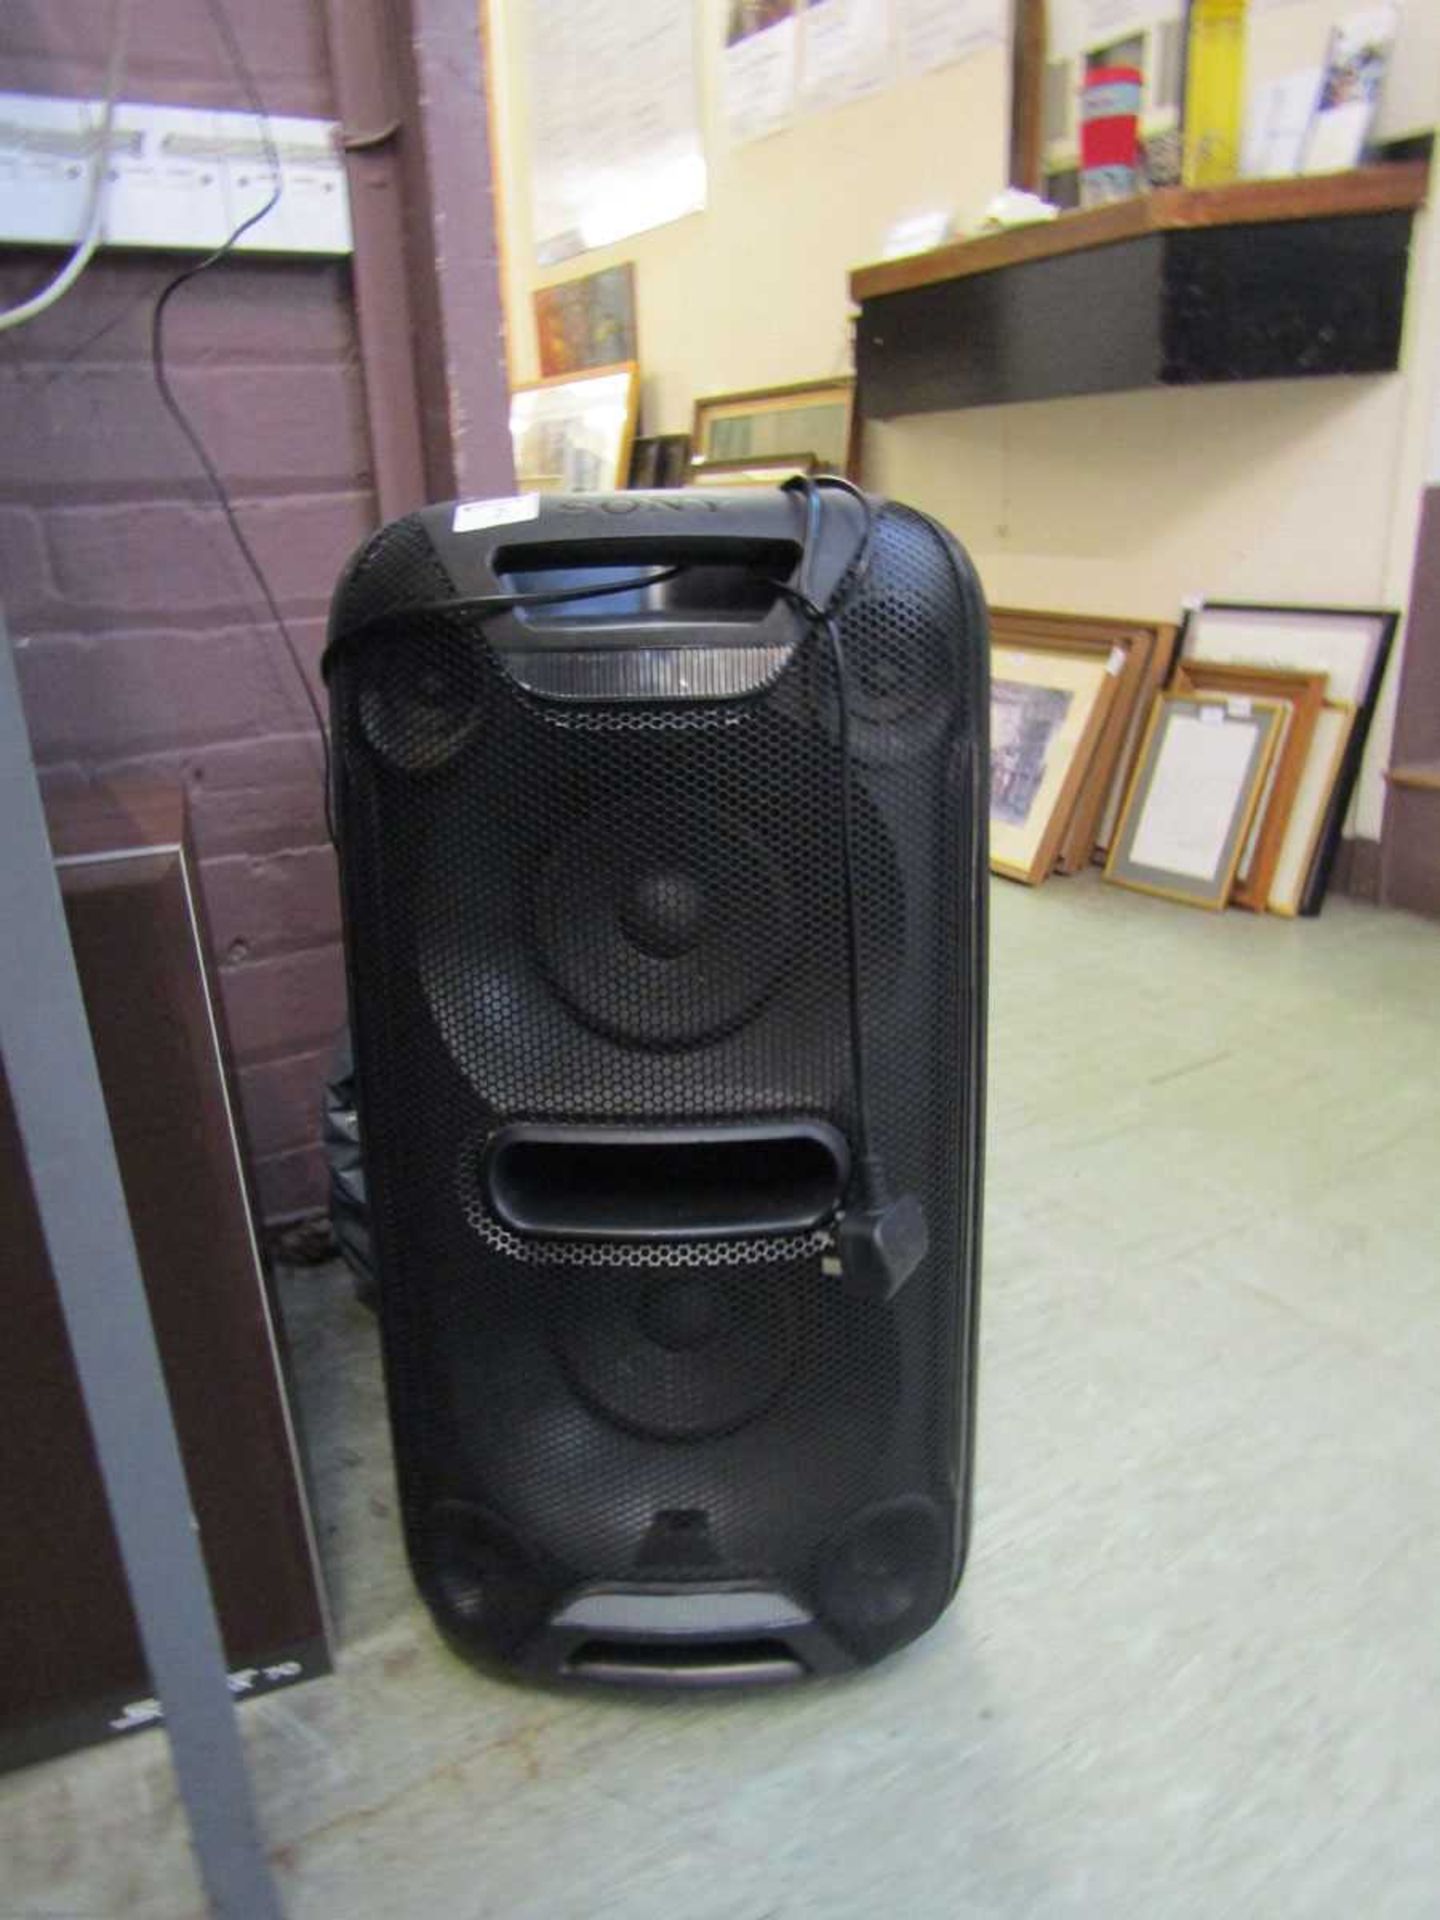 A Sony speaker model no. GTK-XB72